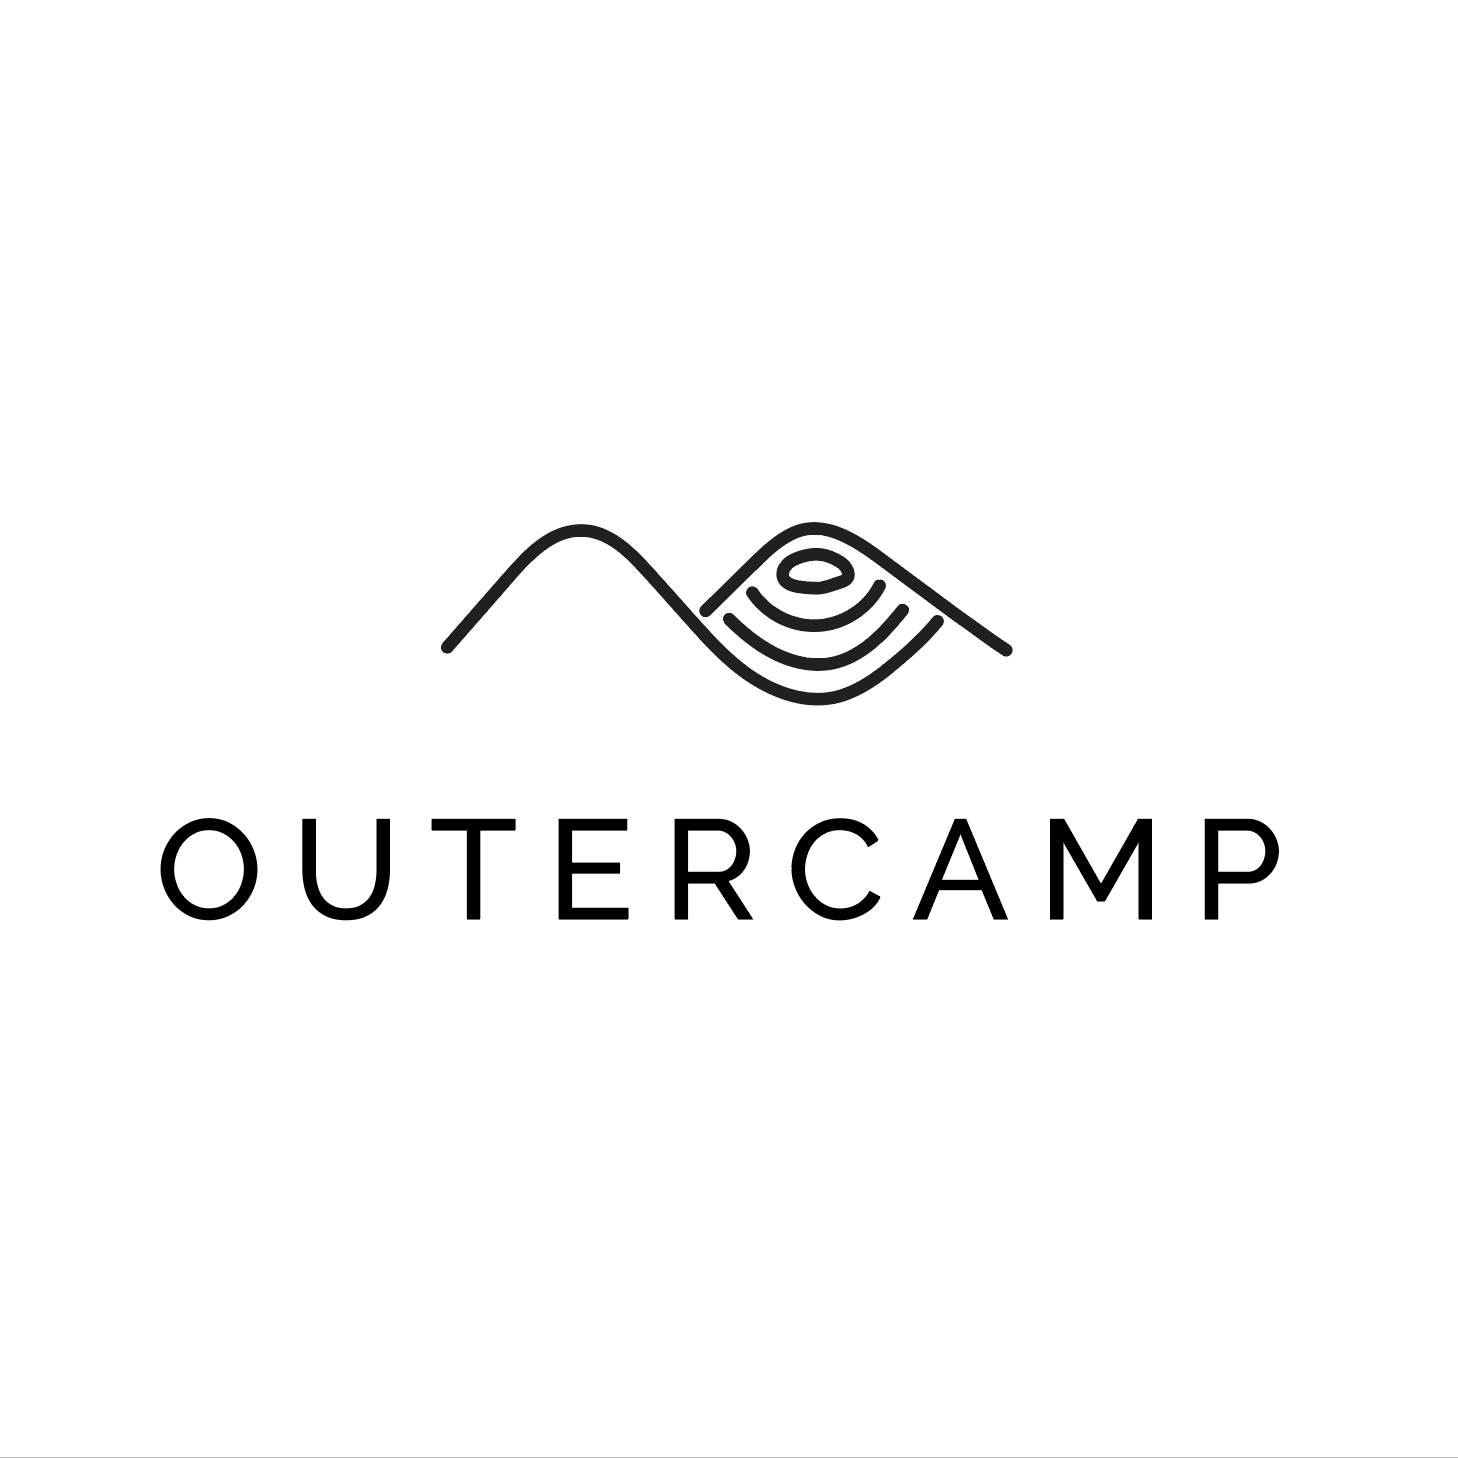 Outercamp